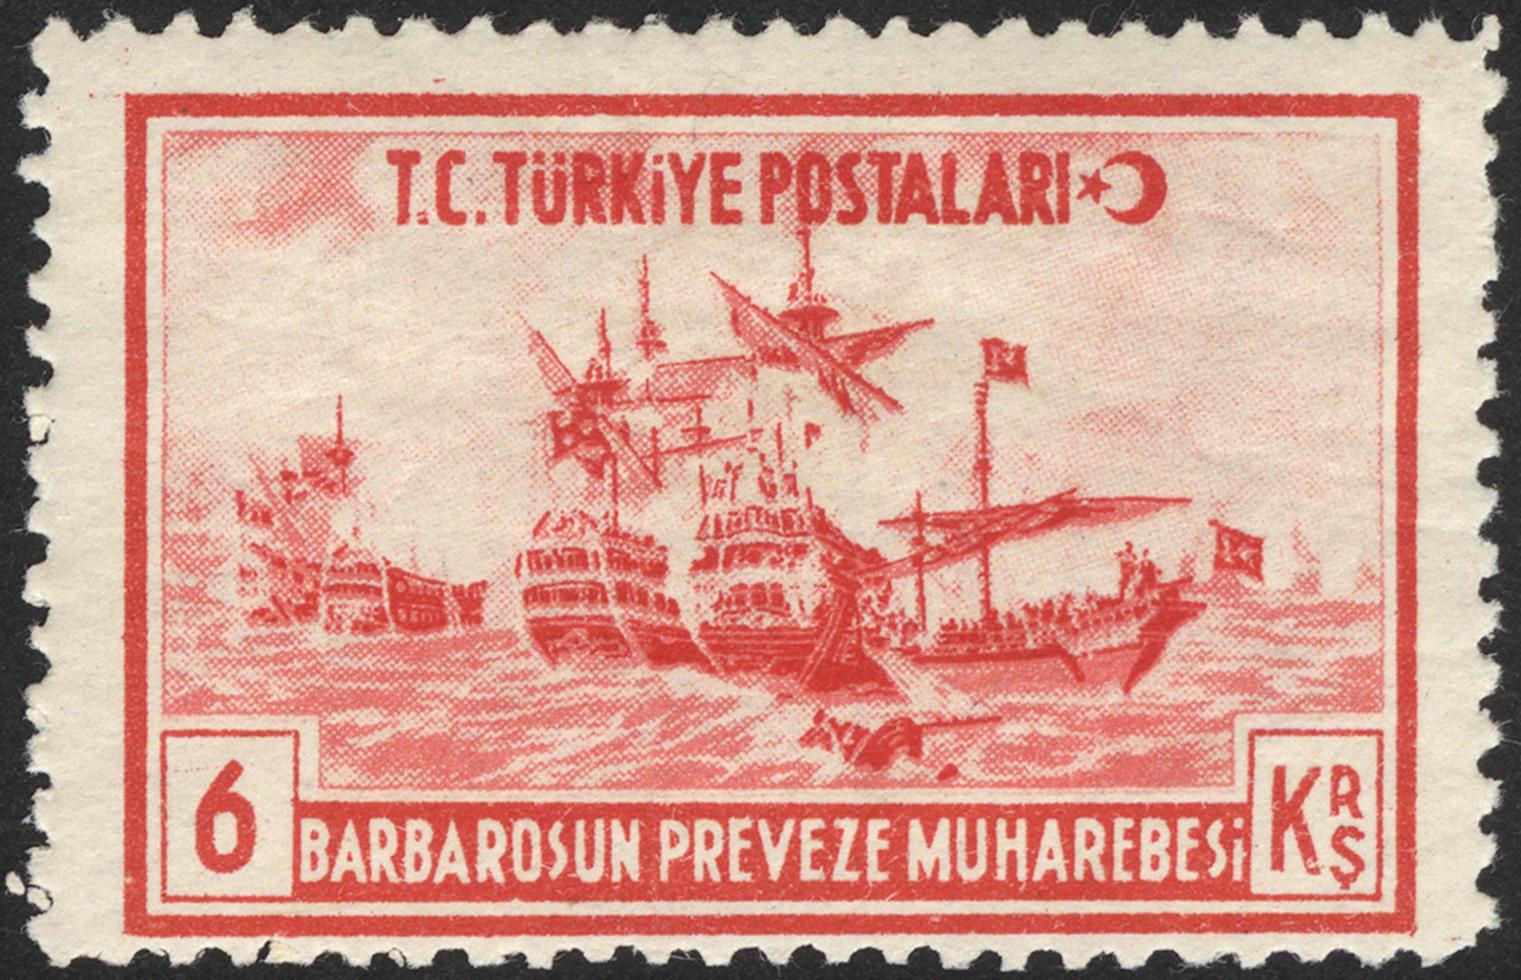 Turquia, 2021 - selo postal vintage da Turquia foto